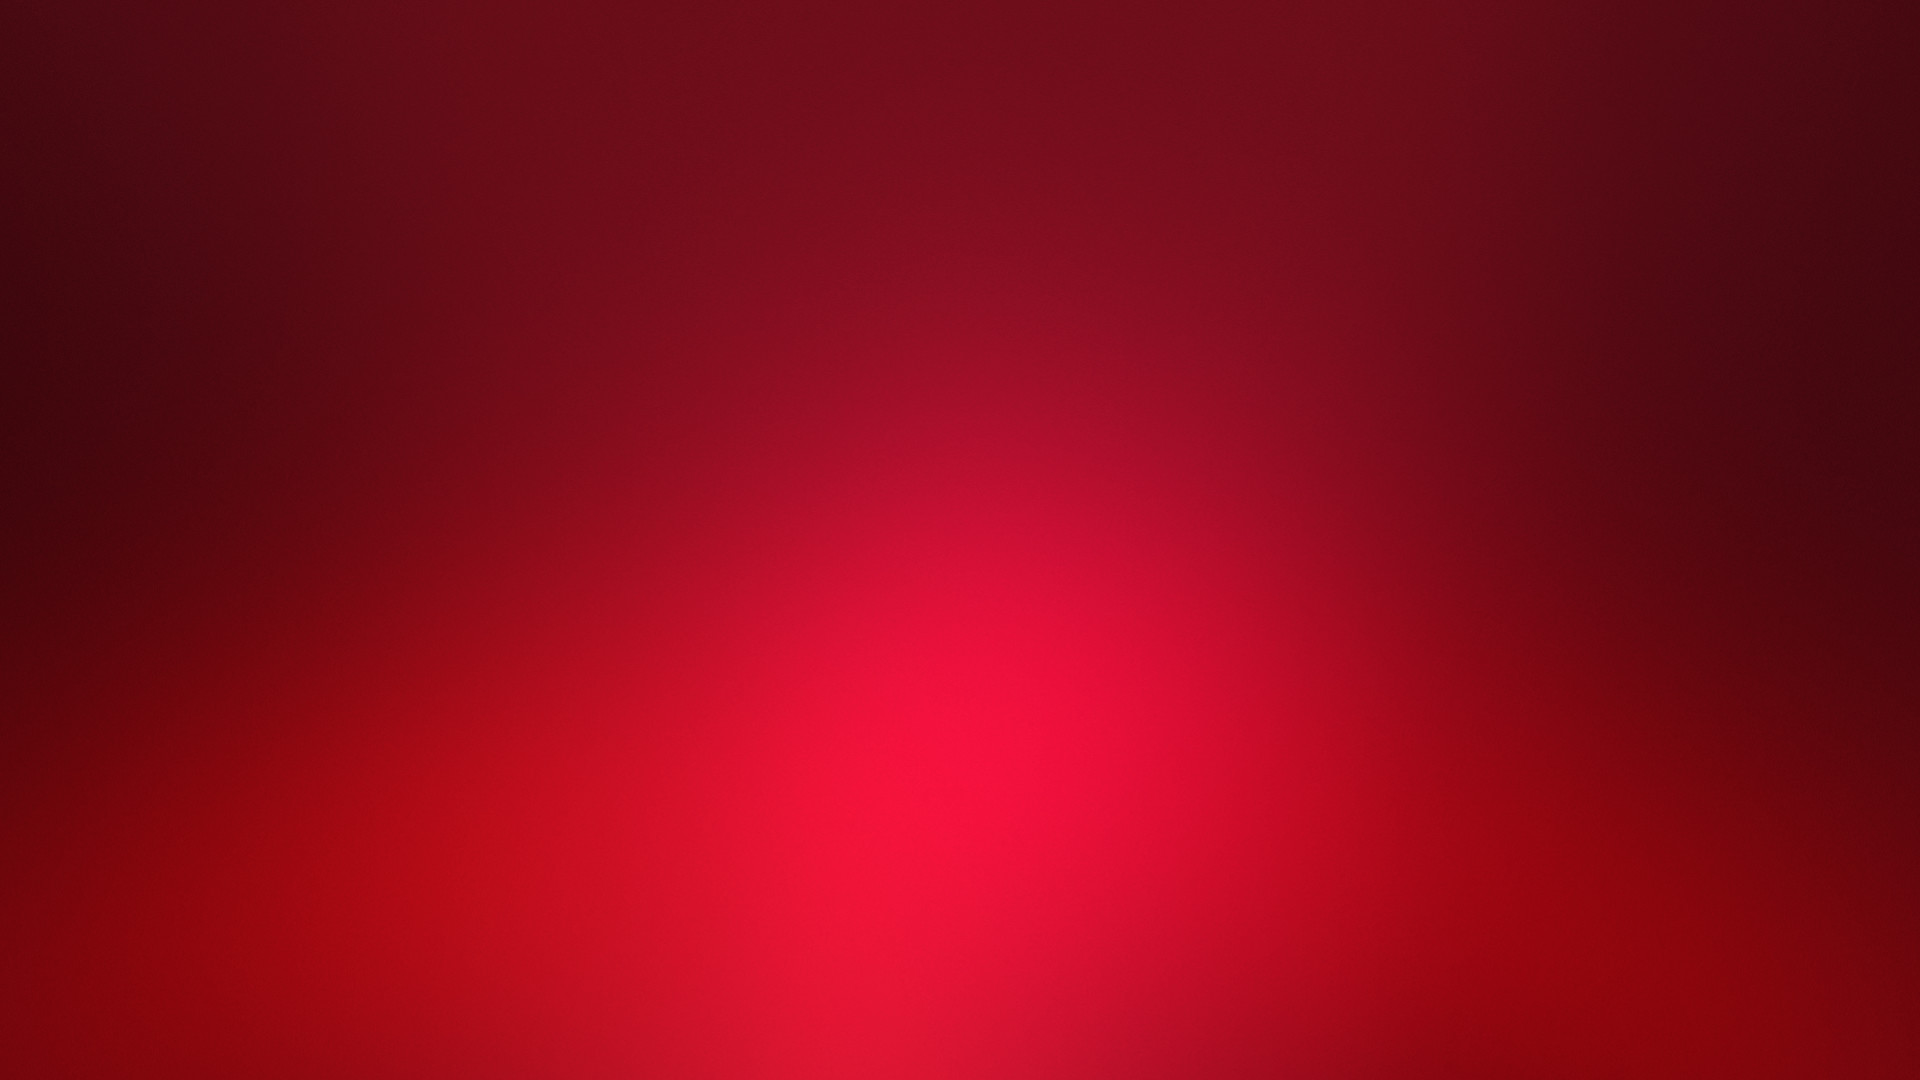 1920x1080 Red faded light HD Wallpaper 